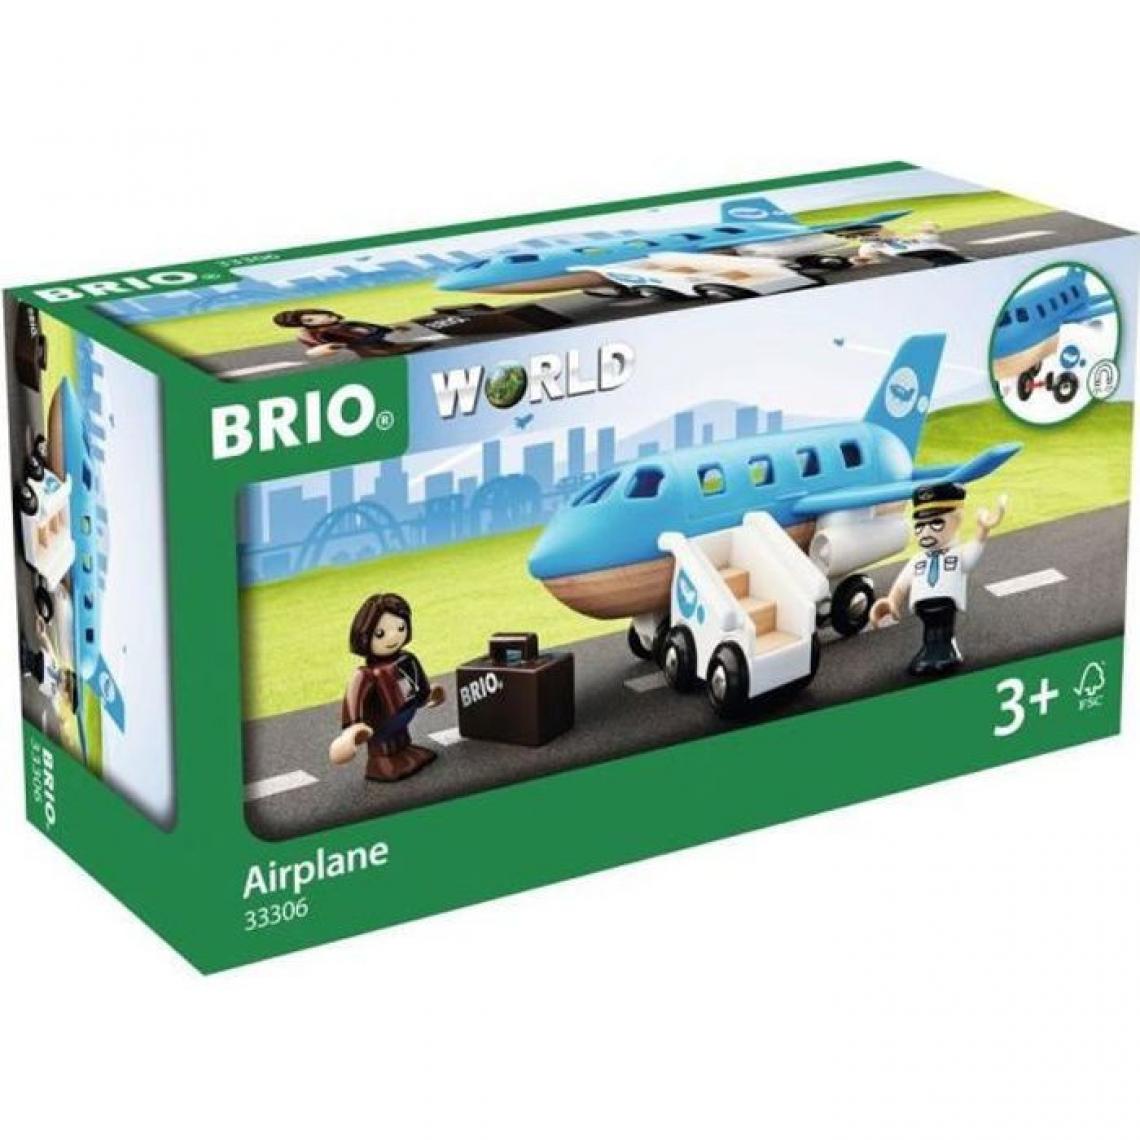 BRIO - Brio World Avion de Voyageurs - Accessoire pour circuit de train en bois - Ravensburger - Mixte des 3 ans - 33306 - Hélicoptères RC